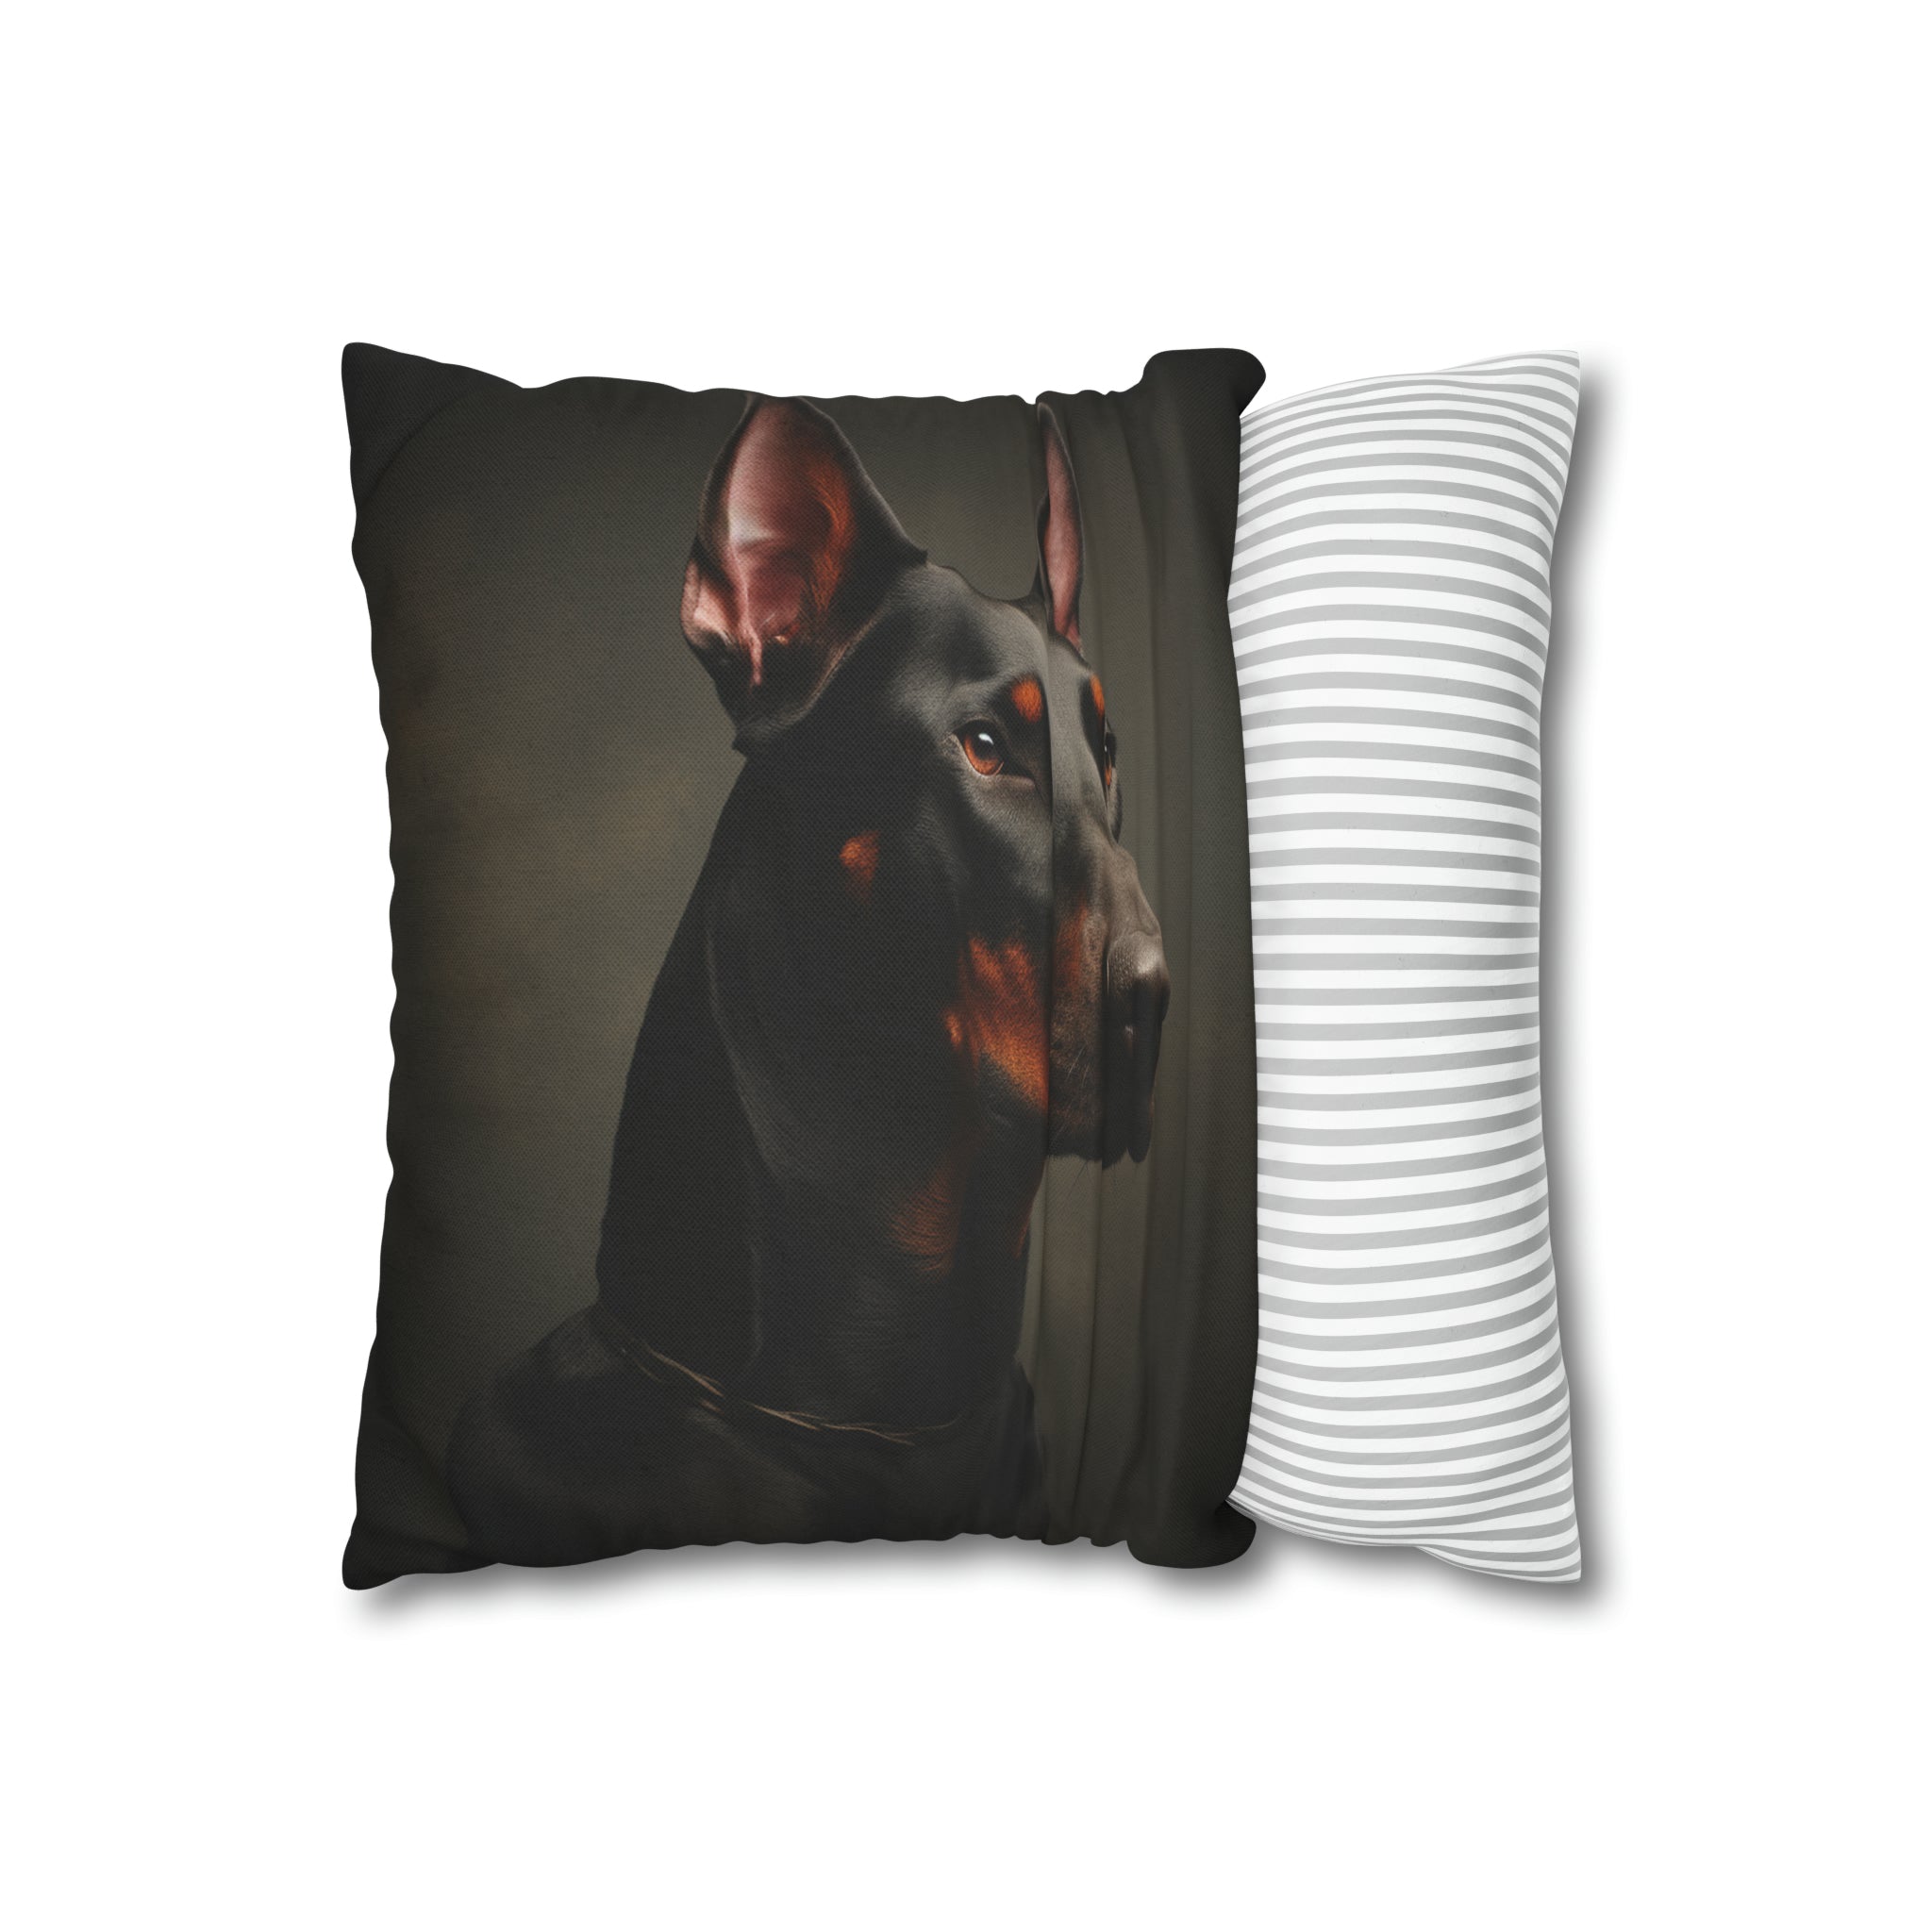 Beware of Dog" Spun Polyester Square Pillow Case- Dobermann Pinscher (Professional Art)